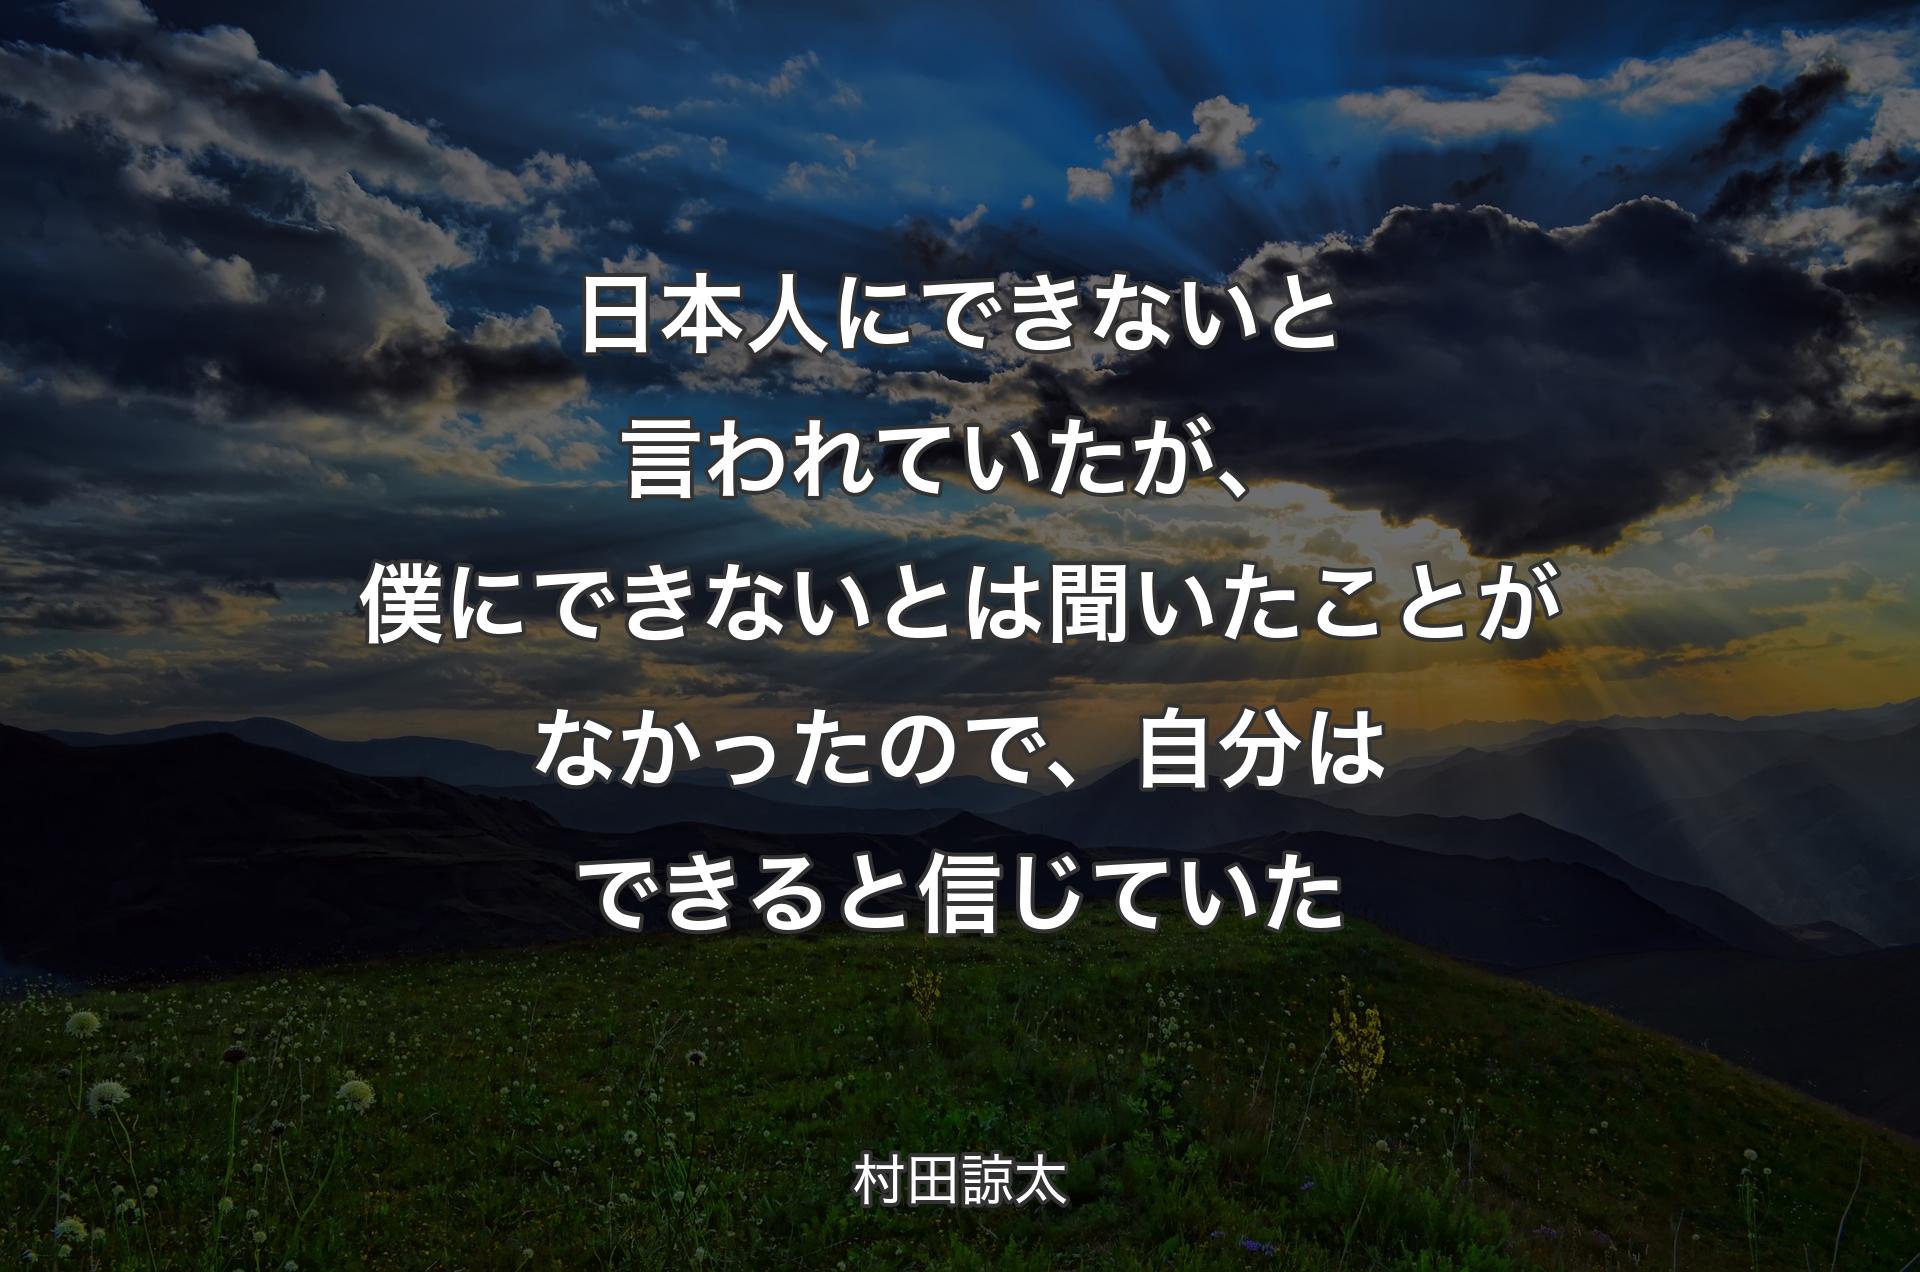 日本人にできないと言われていたが、僕にできないとは聞いたことがなかったので、自分はできると信じていた - 村田諒太